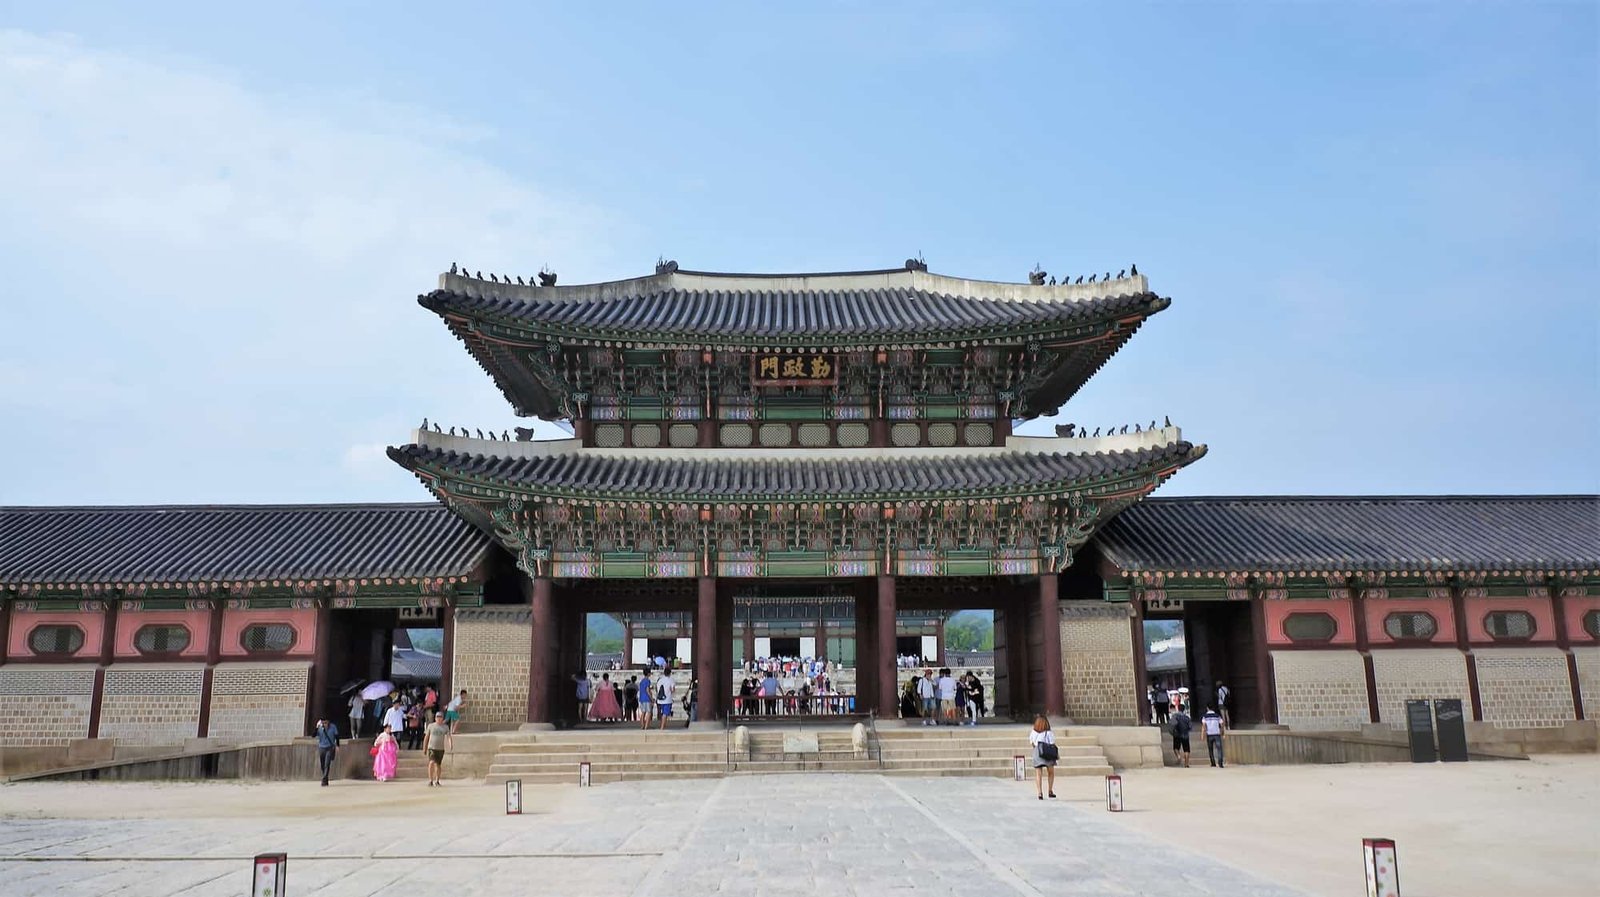 Geunjeongmun Gate and Corridor of Gyeongbokgung Palace